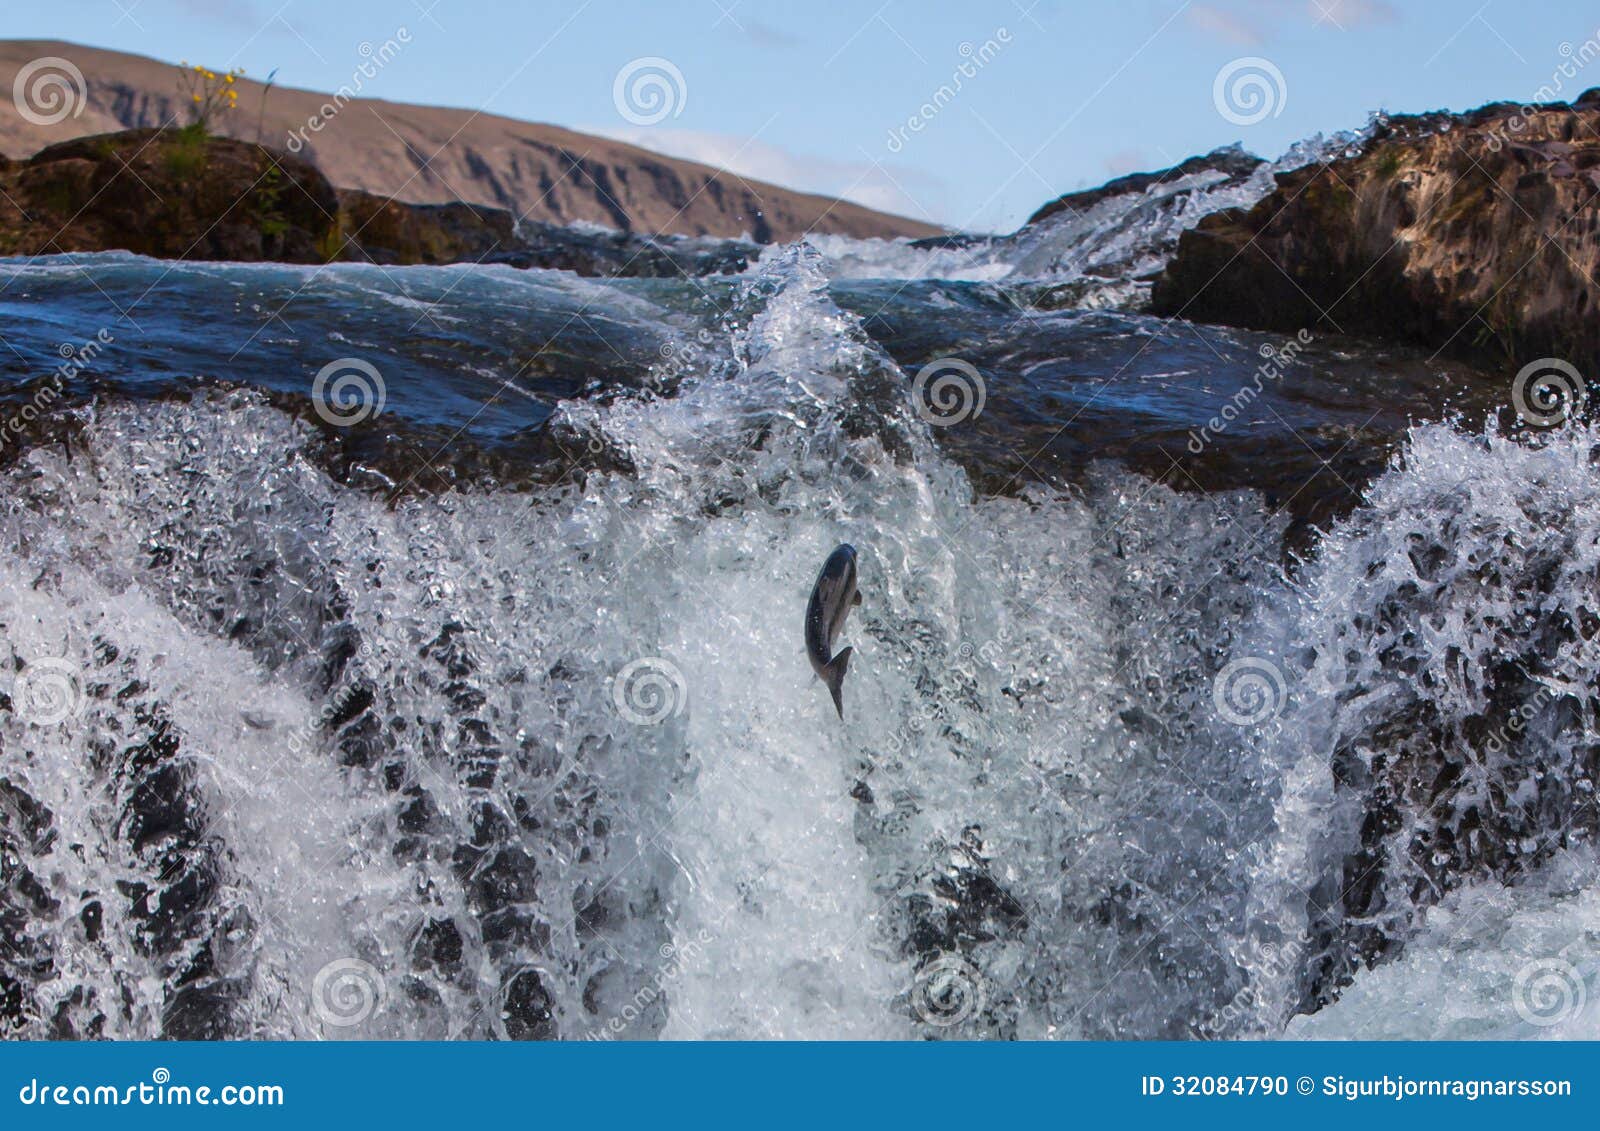 wild atlantic salmon